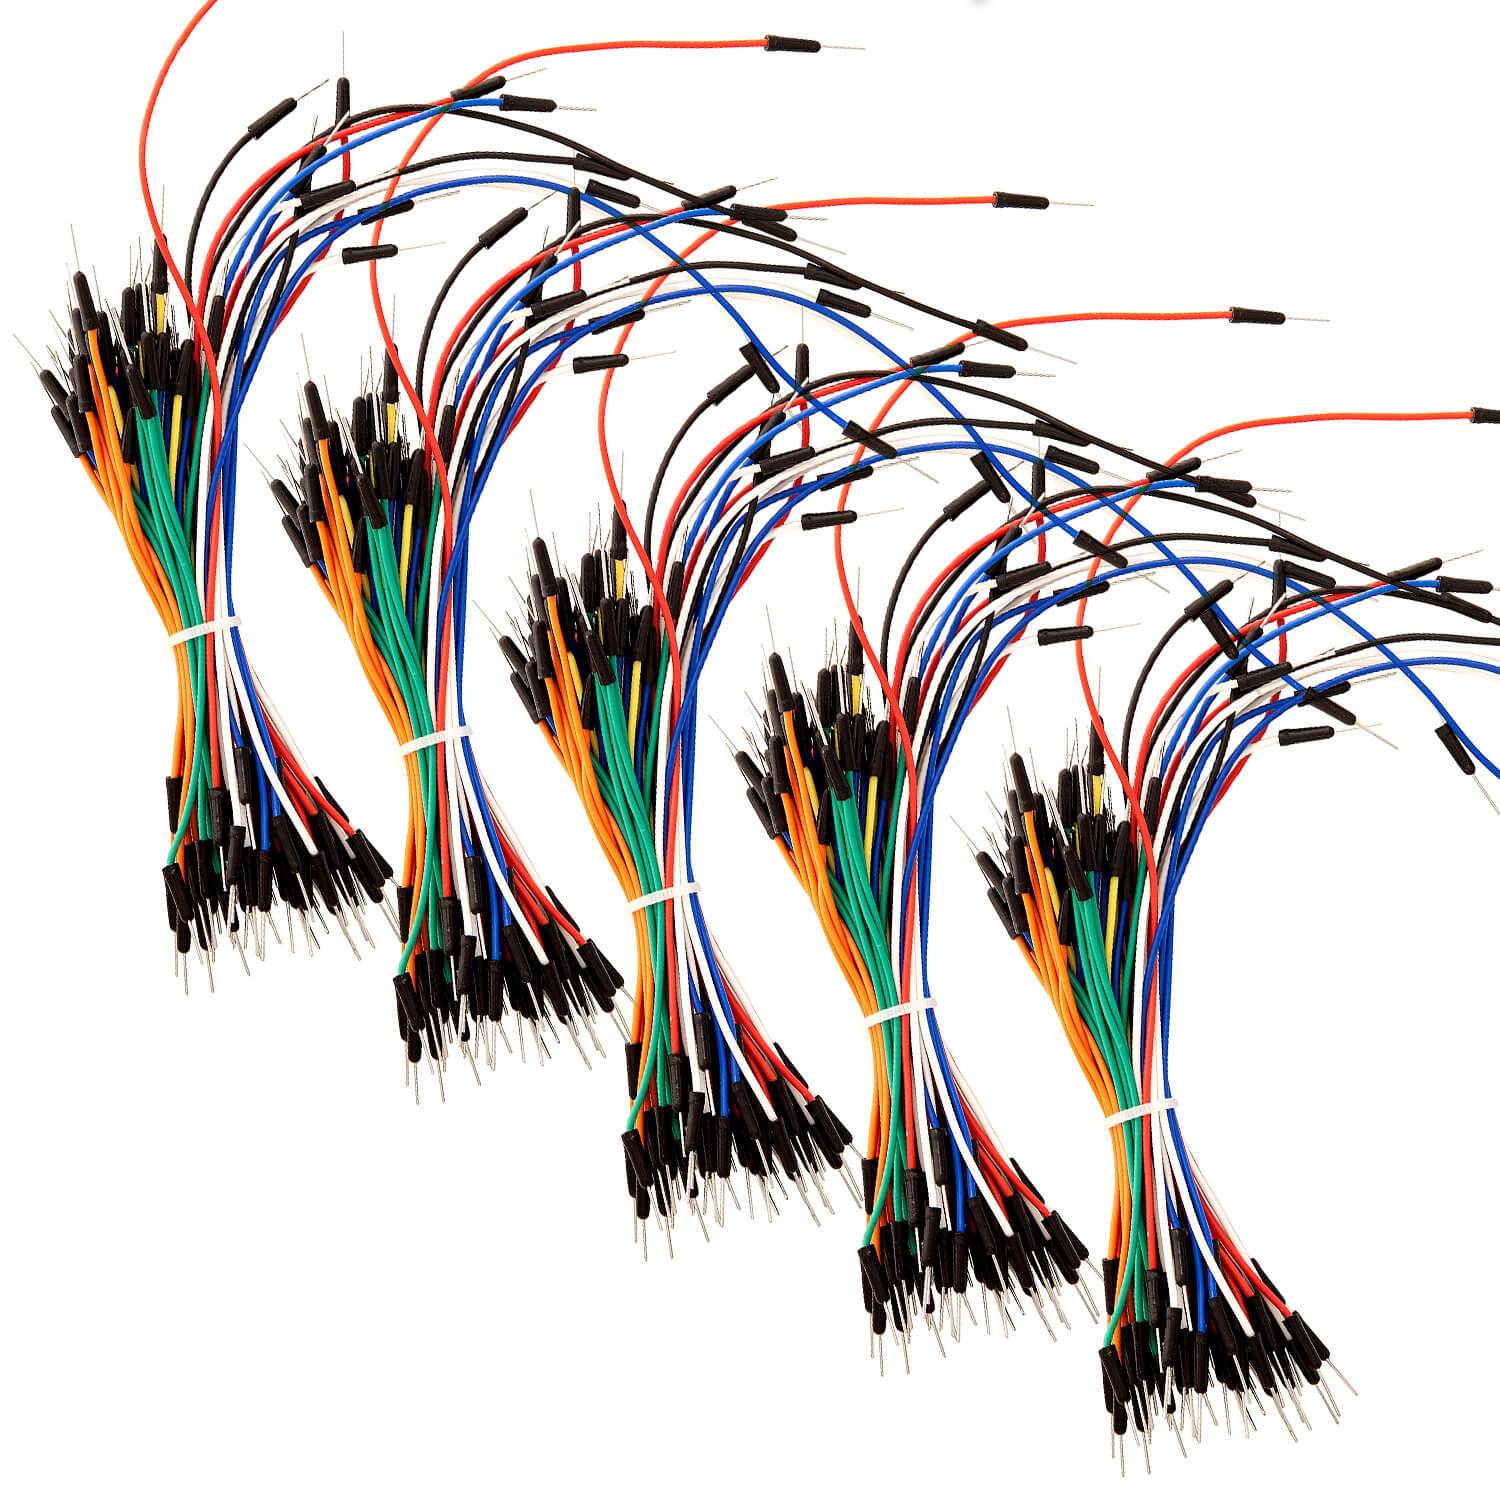 65Stk. Jumper Wire Kabel Steckbrücken für Arduino Breadboard, Steckbrett Arduino Zubehör AZ-Delivery 5x Jumper Wire 